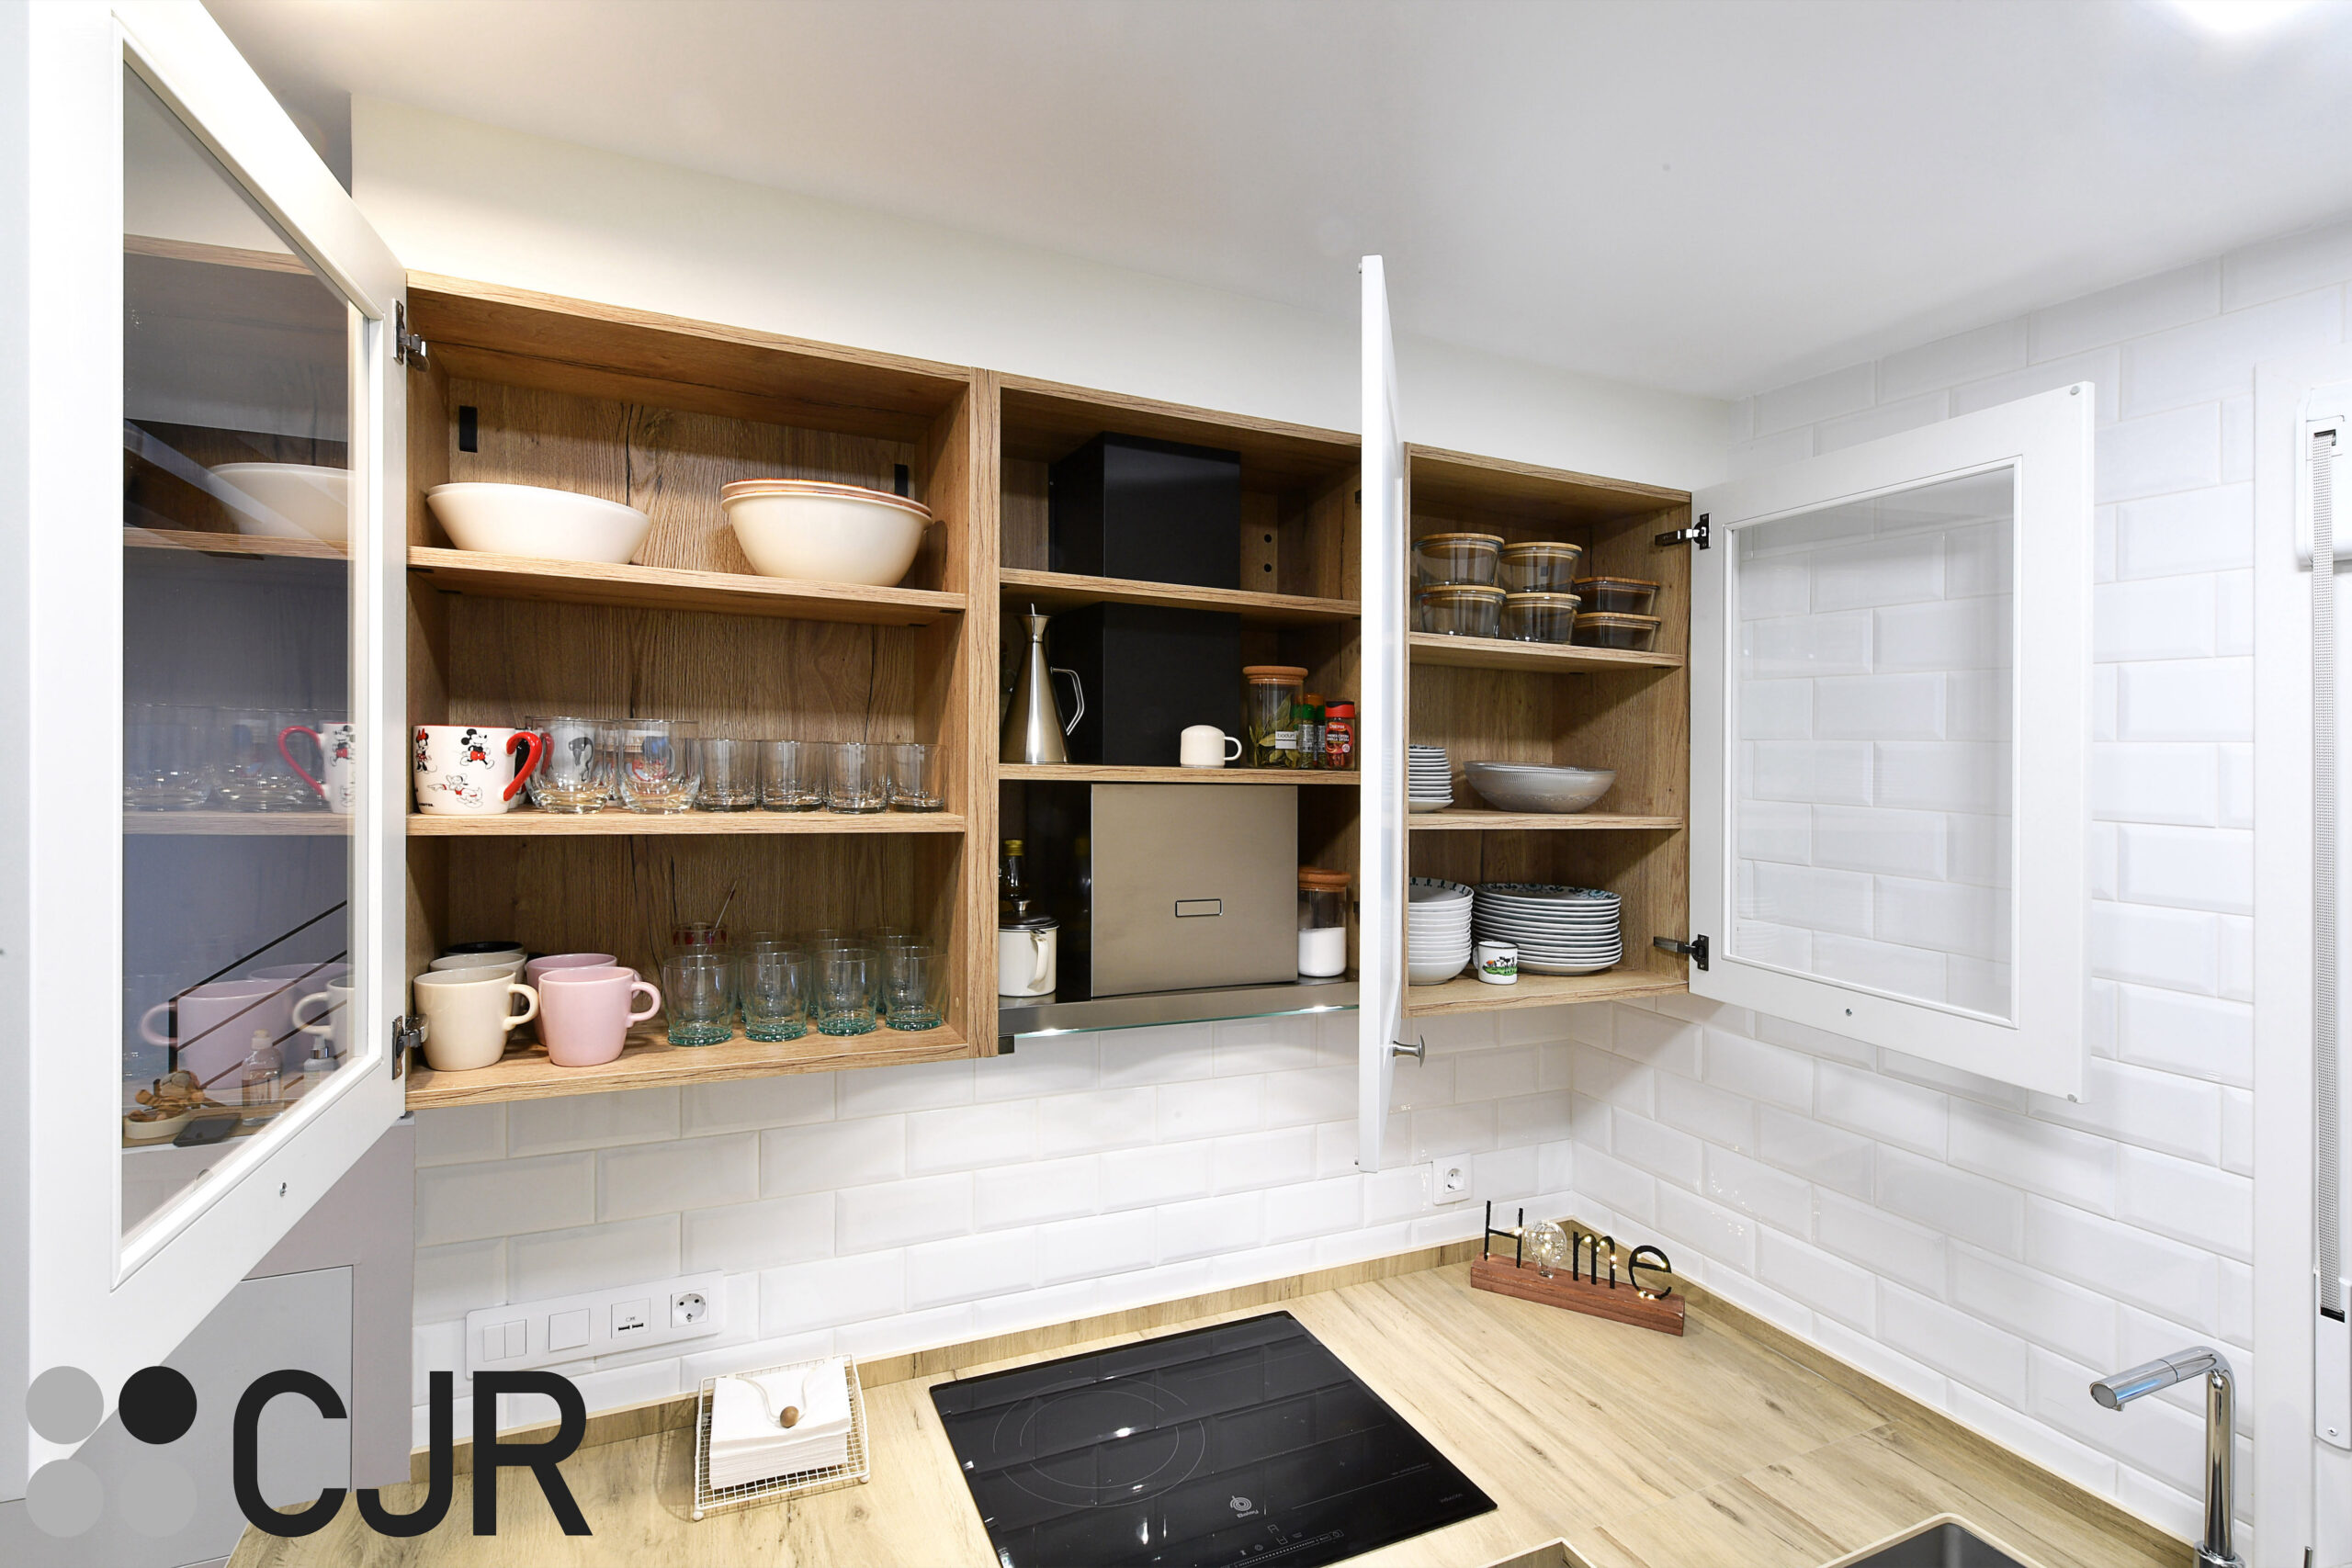 muebles altos de cocina en blanco con el interior en madera cjr